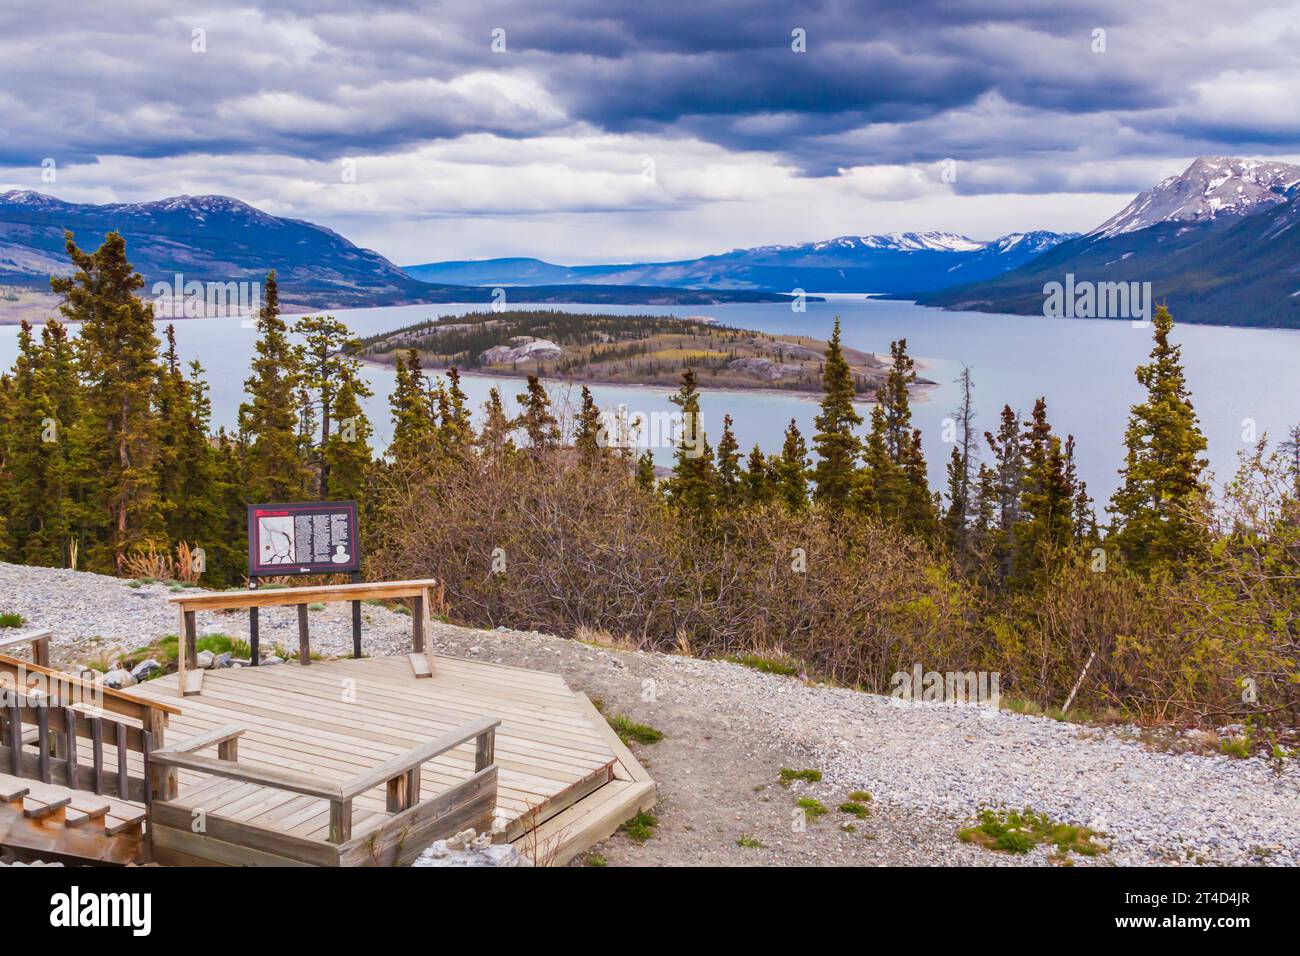 Île Bove et bras venteux du lac Tagish dans le territoire du Yukon, Canada. Le Windy Arm du lac Tagish faisait autrefois partie d'une route de pagaie historique. Banque D'Images